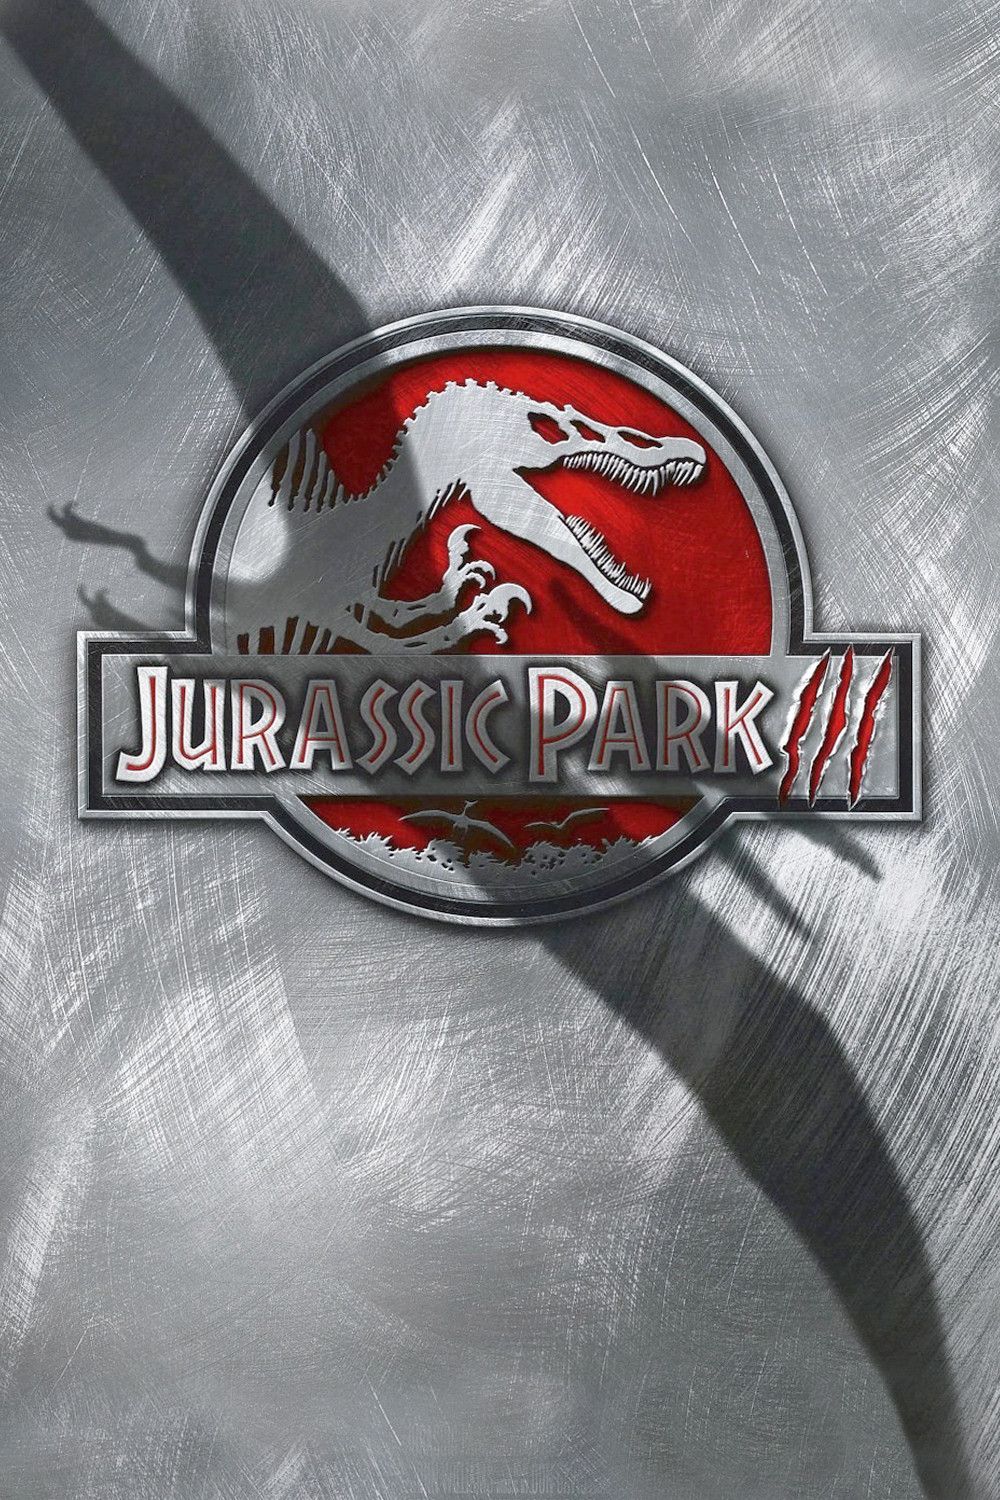 ดูหนังออนไลน์ Jurassic Park 3 (2001) จูราสสิค ปาร์ค 3 ไดโนเสาร์พันธุ์ดุ